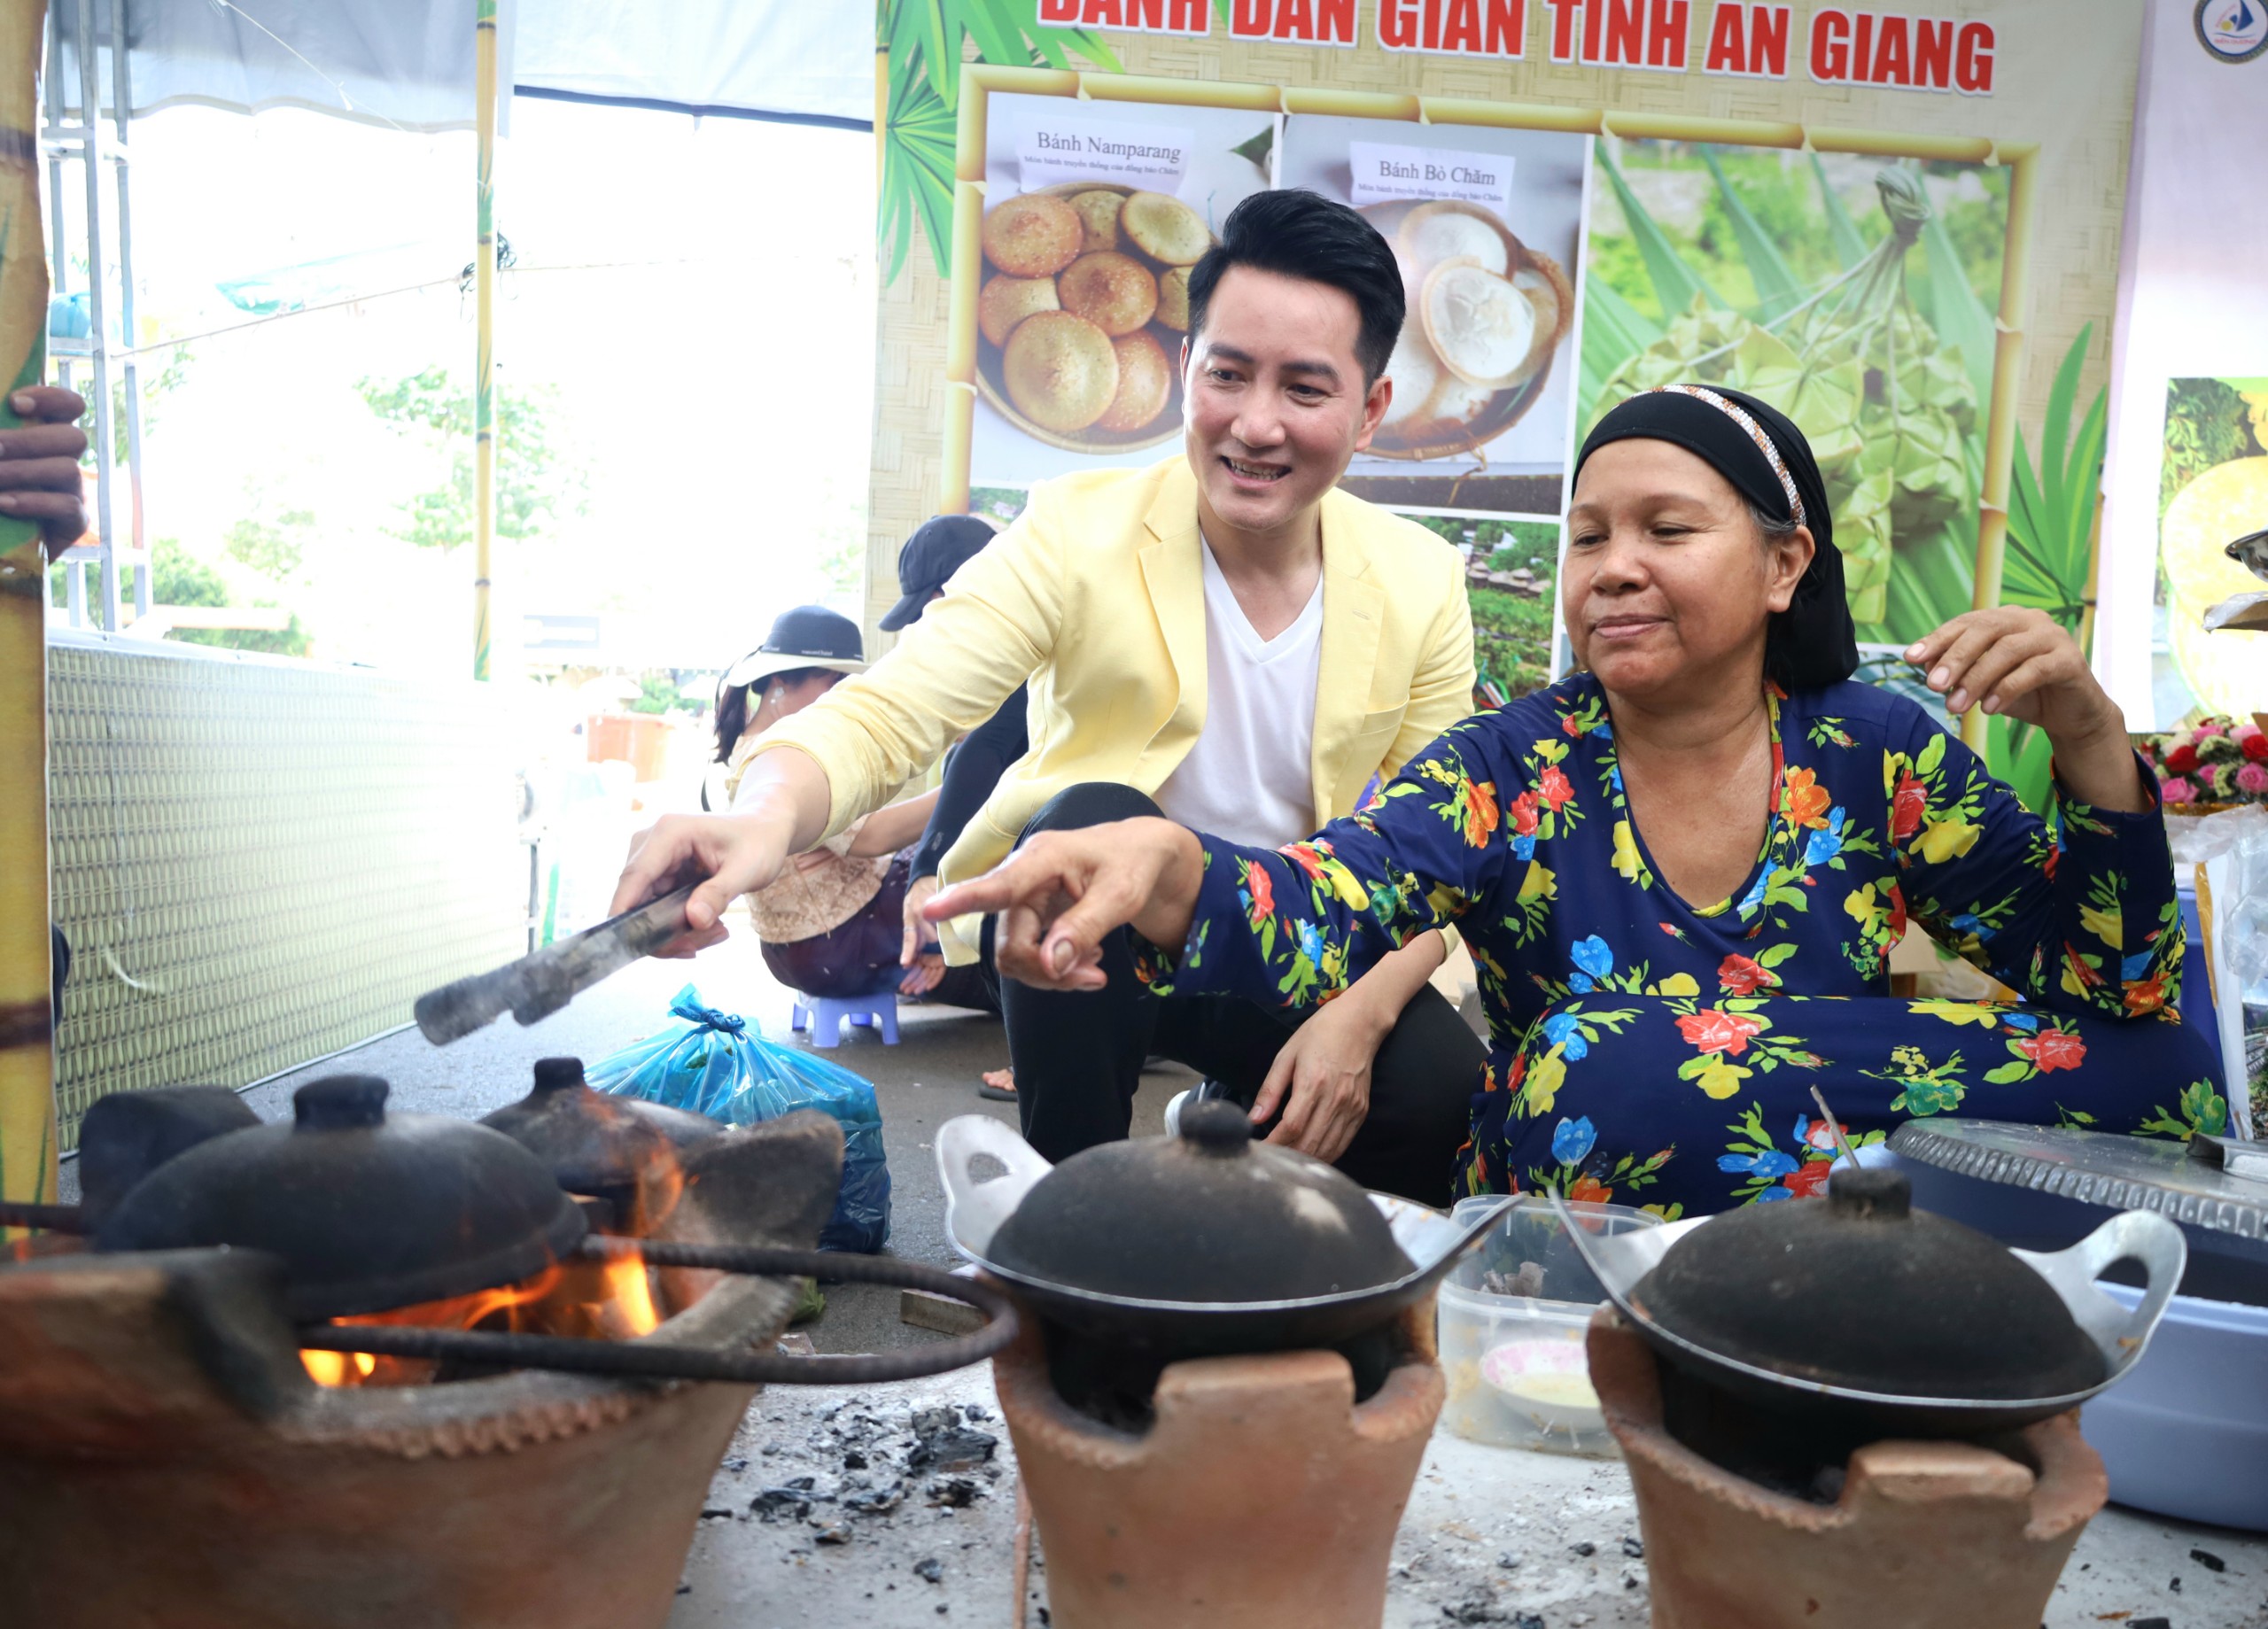 Ca sĩ Nguyễn Phi Hùng trải nghiệm làm bánh cùng nghệ nhân làm bánh truyền thống người Chăm.